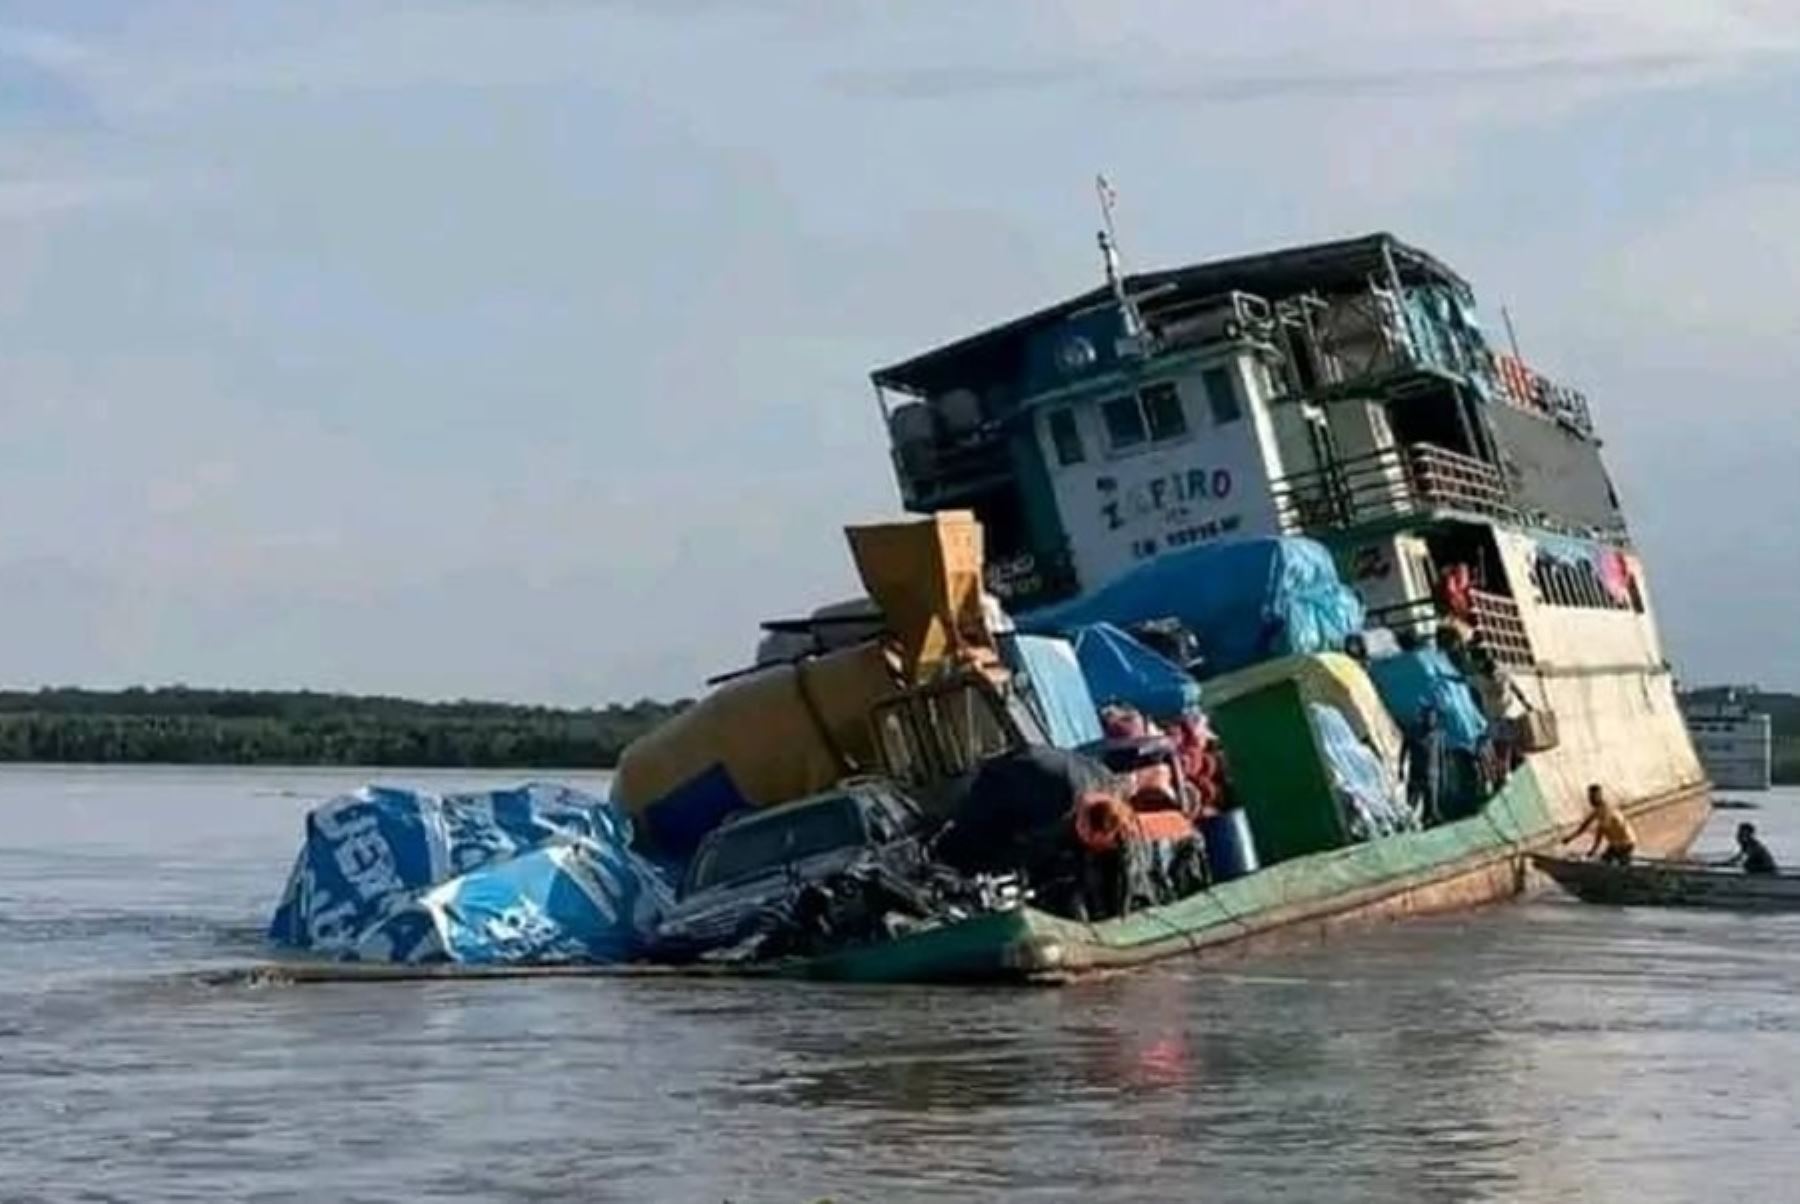 El exceso de carga provocó que la embarcación fluvial Zafiro, que se dirigía a la ciudad de Iquitos, se hundiera en las aguas del río Ucayali, informó la capitanía de puerto de Pucallpa.